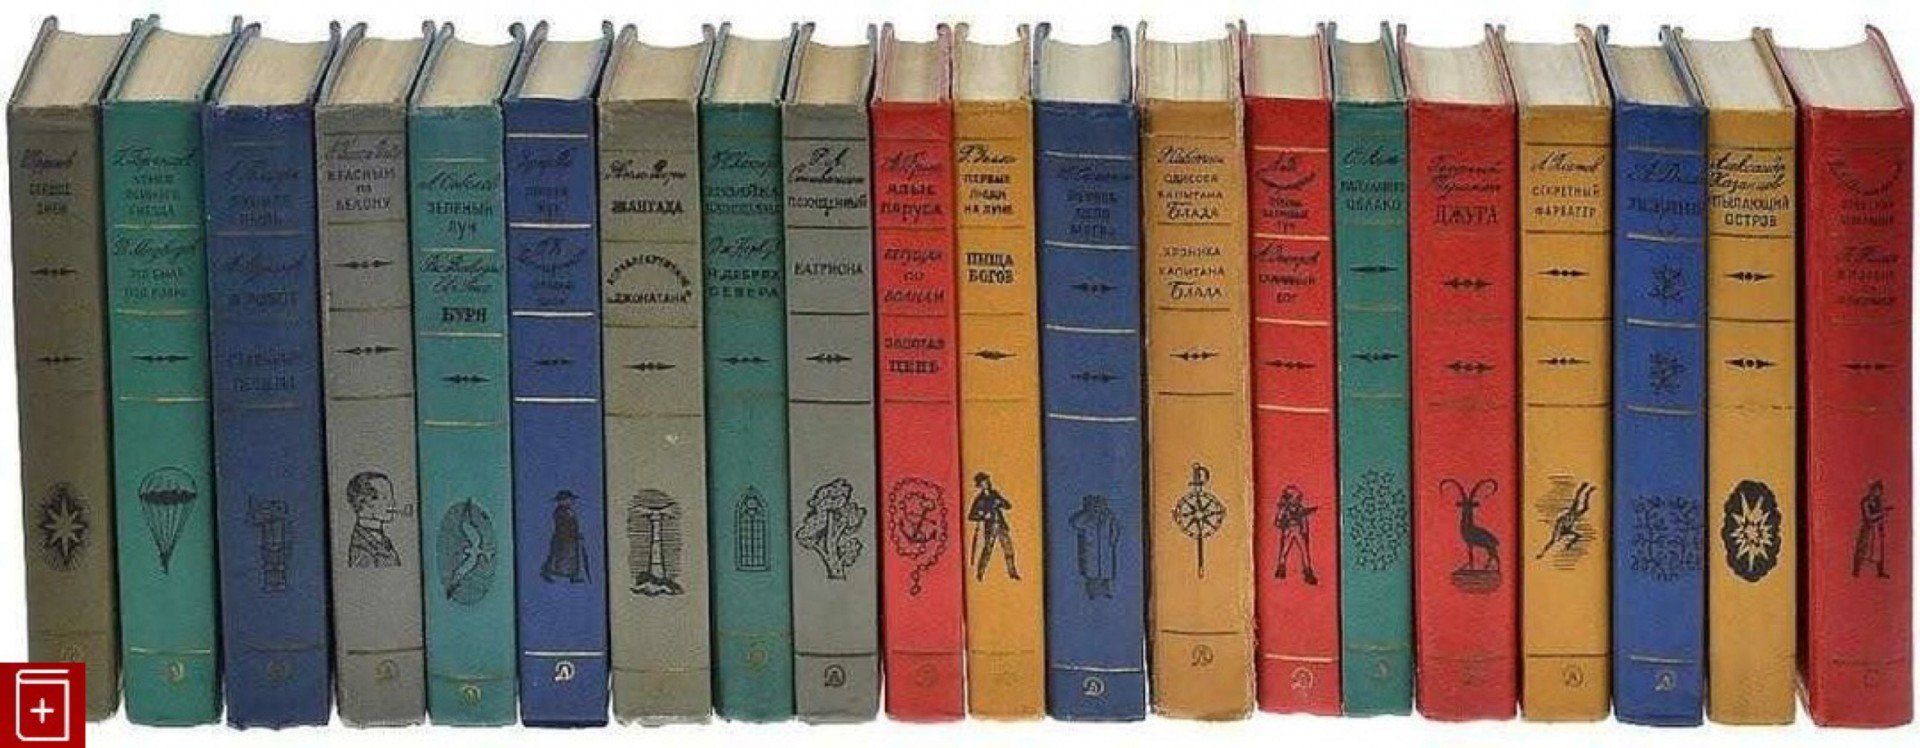 Библиотека приключений в 20 томах 1965-1970г